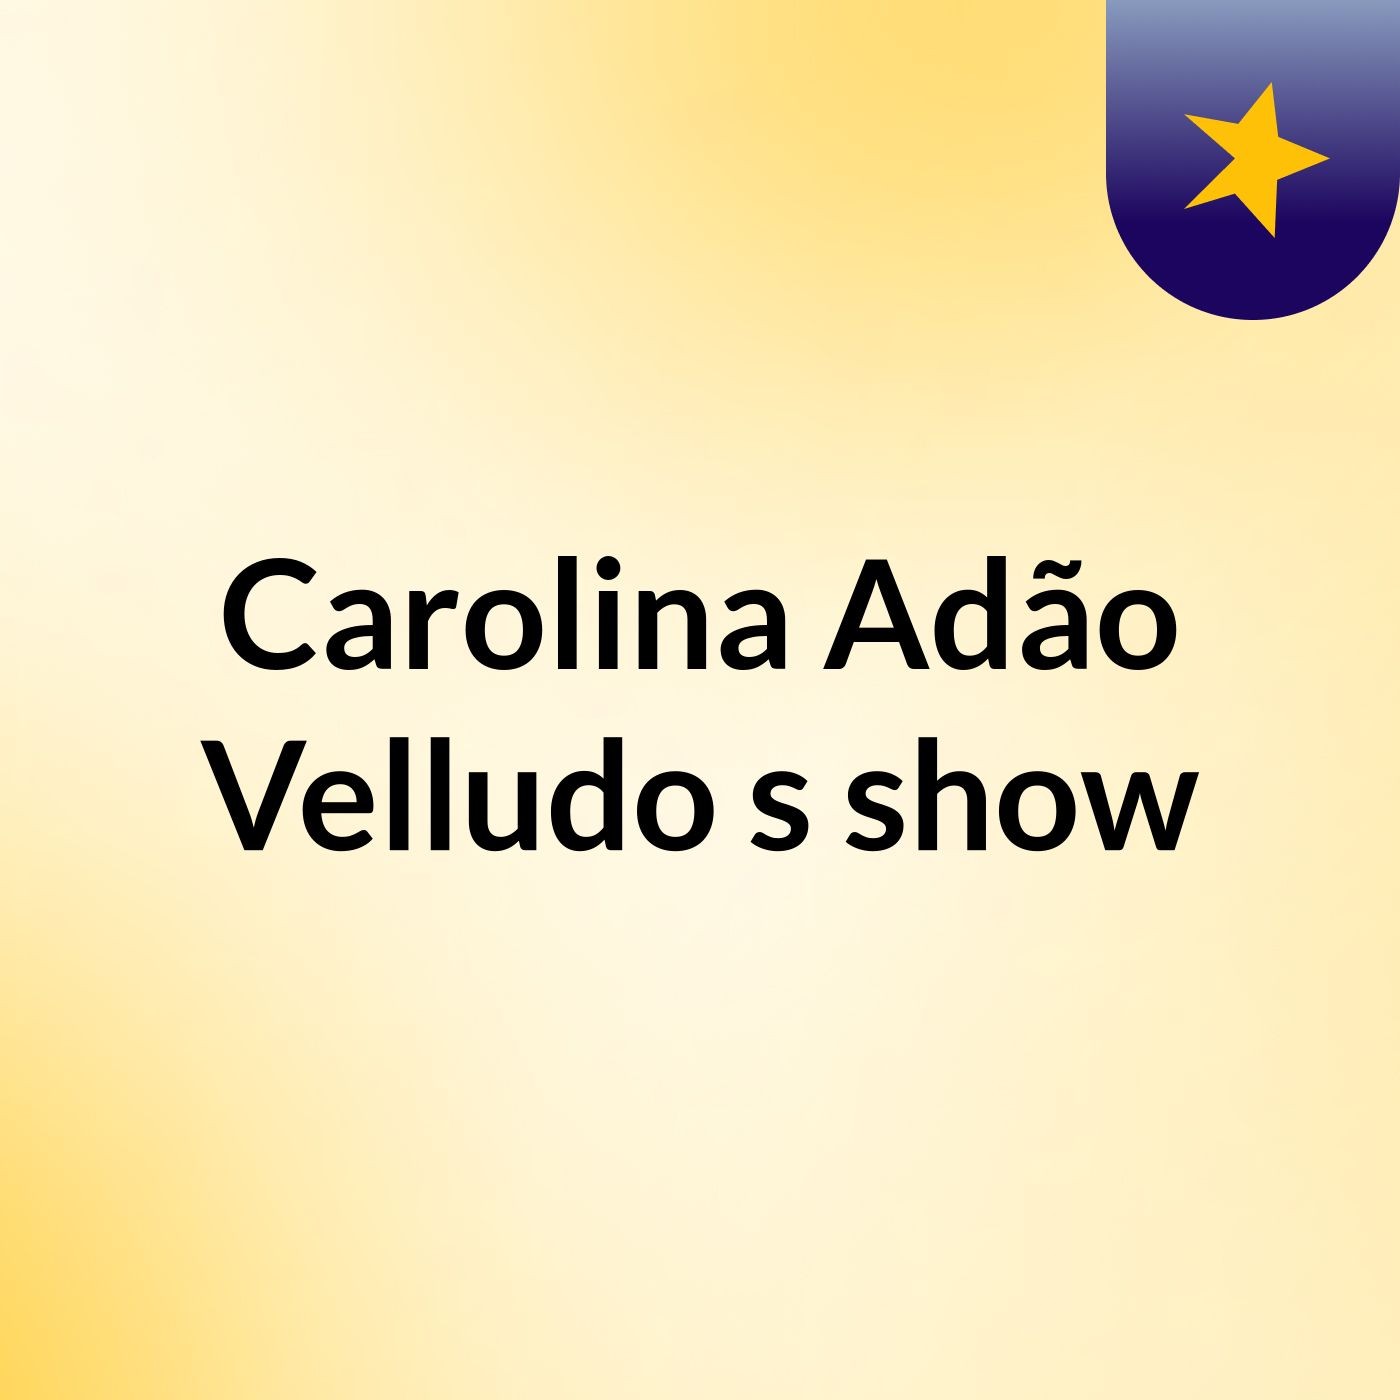 Carolina Adão Velludo's show